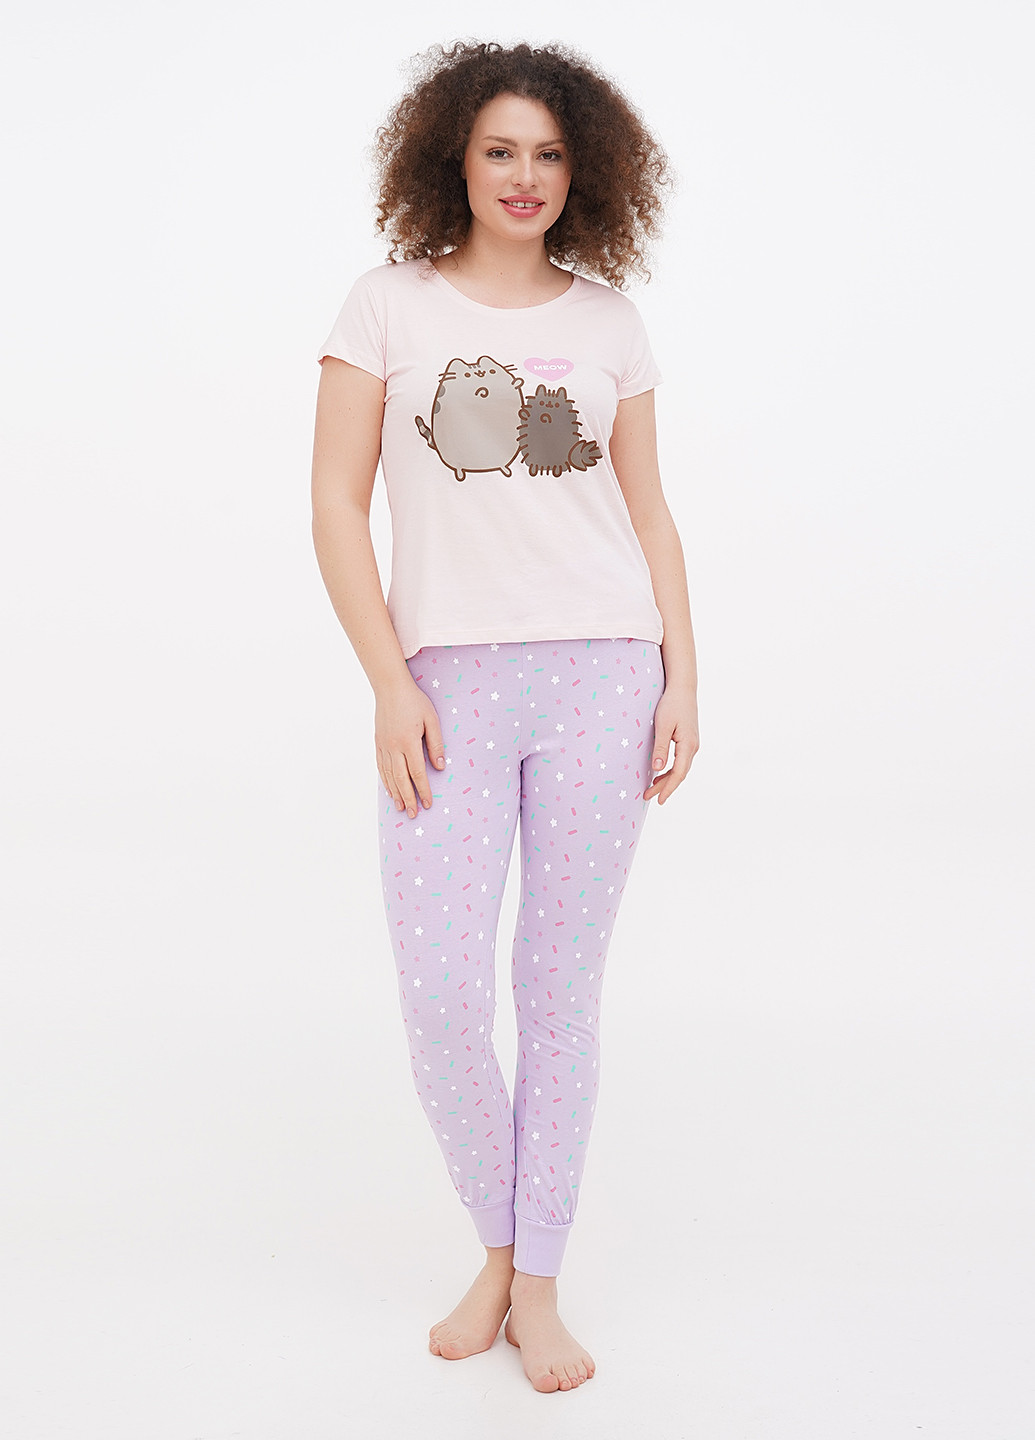 Комбинированная всесезон пижама (футболка, брюки) футболка + брюки Pusheen cat